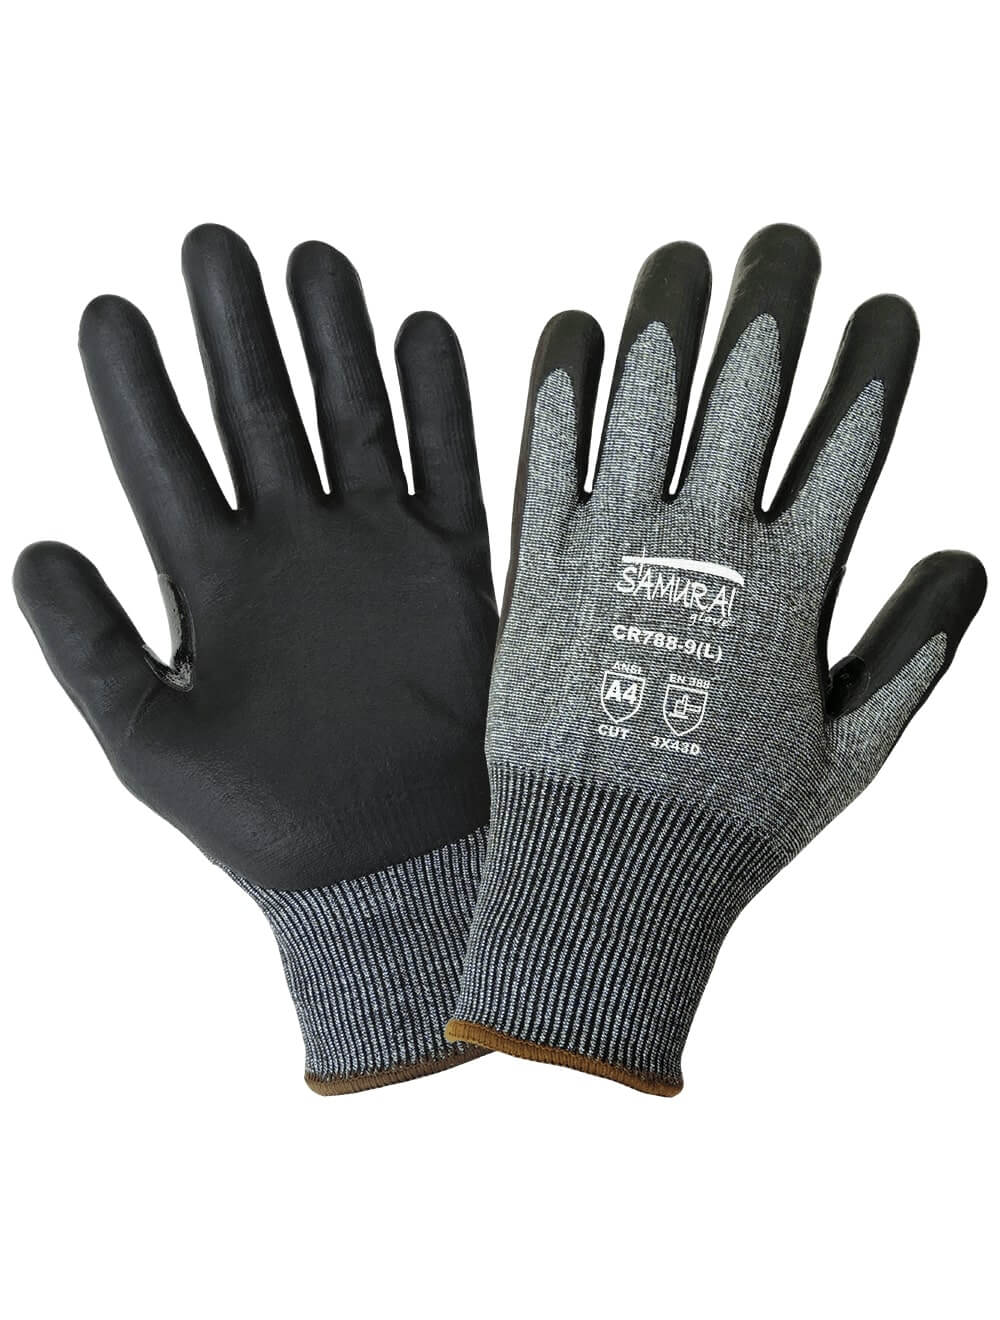 Vgo Cut Resistant Work Gloves Men,Cut Proof Gloves for Men,ANSI